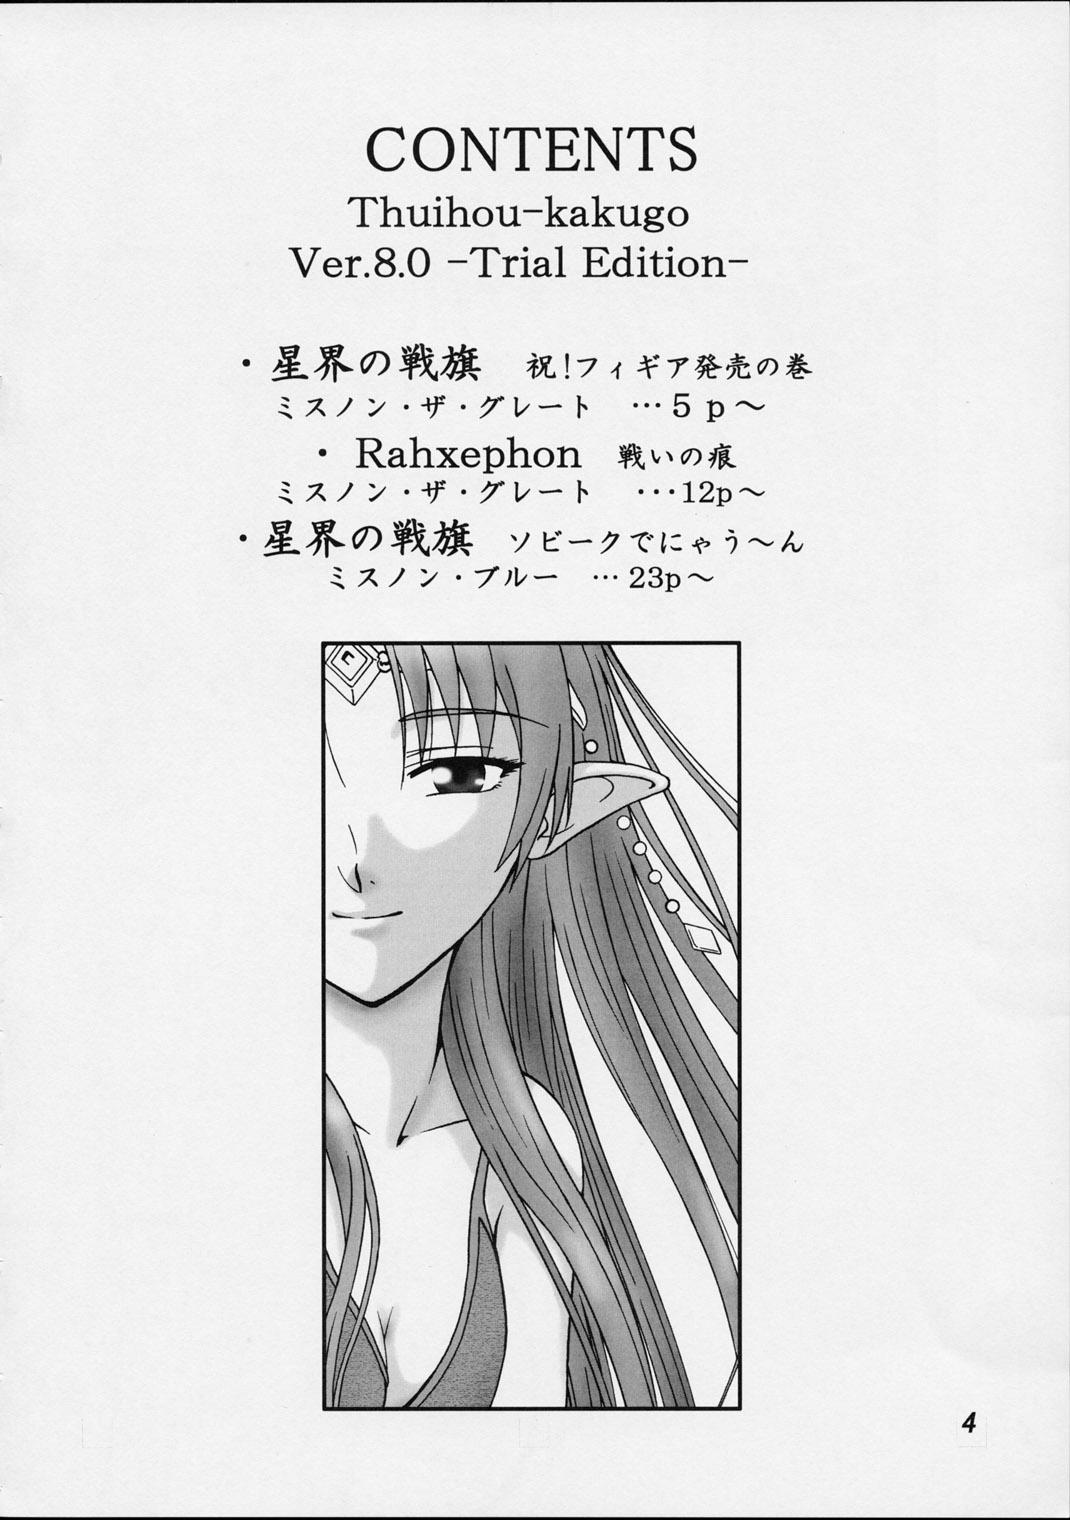 Upskirt (C62) [Oretachi Misnon Ikka (Misnon the Great, Misnon Blue)] Thuihou-kakugo Ver.8.0 -Trial Edition- (Seikai no Senki, RahXephon) - Banner of the stars Rahxephon Amadora - Page 3